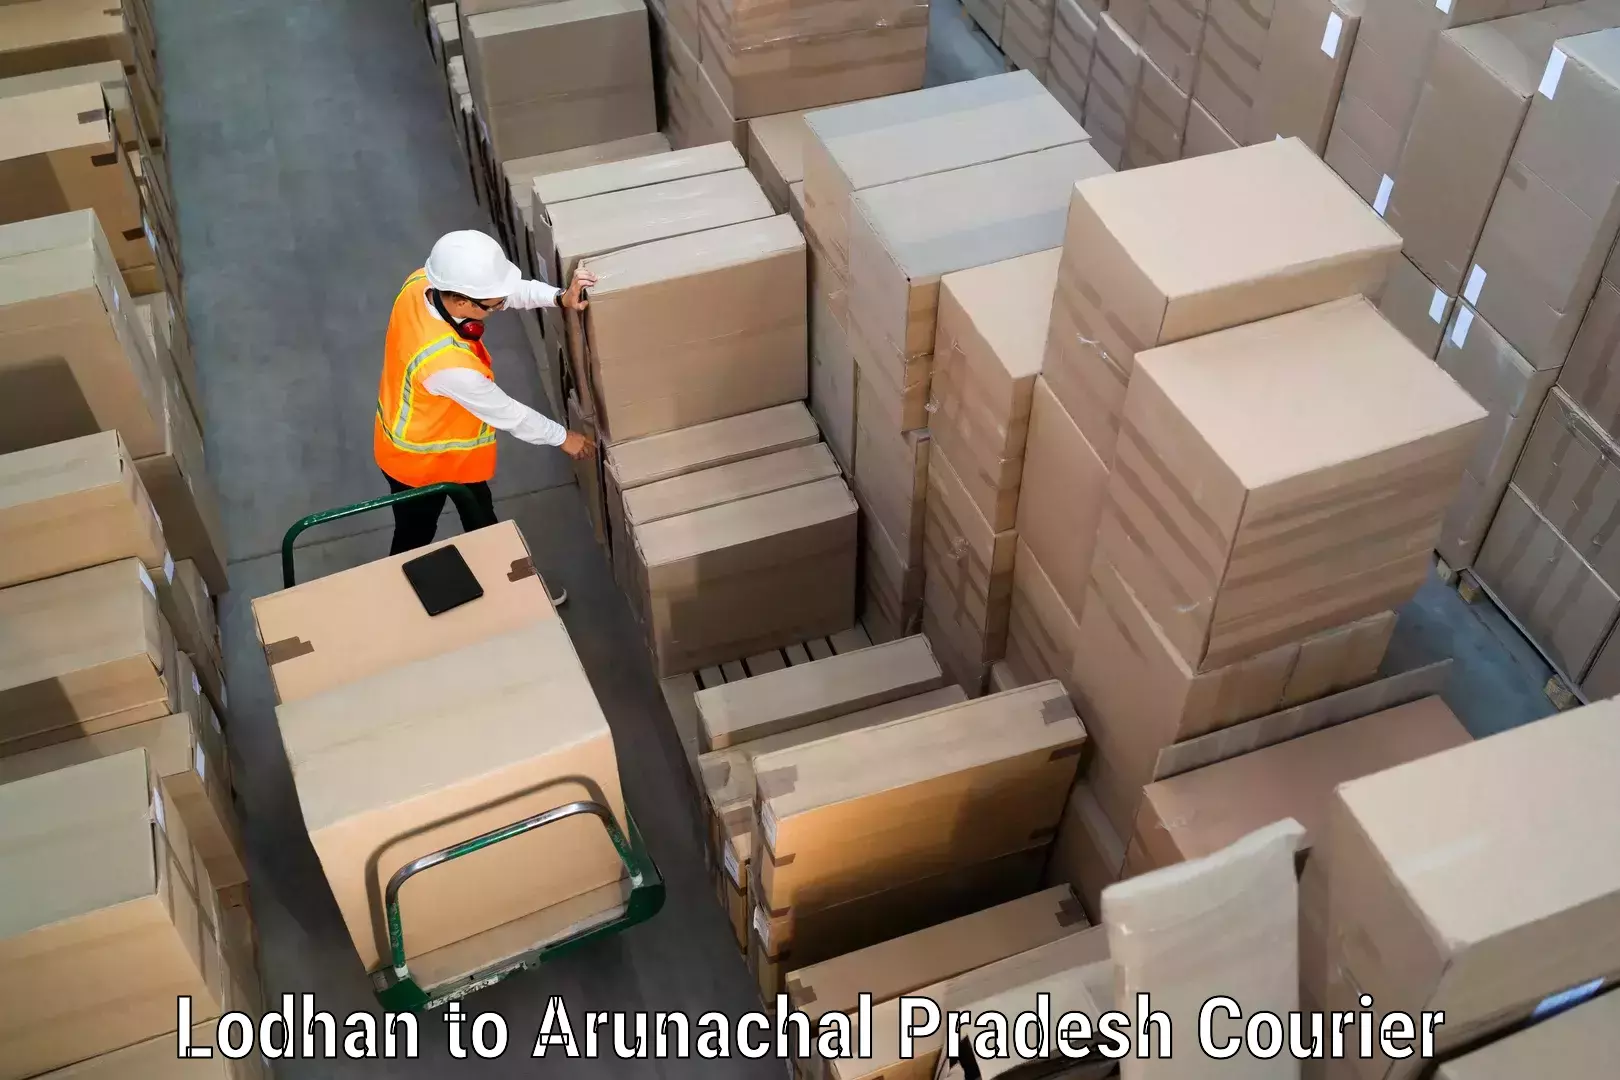 International courier rates Lodhan to Arunachal Pradesh